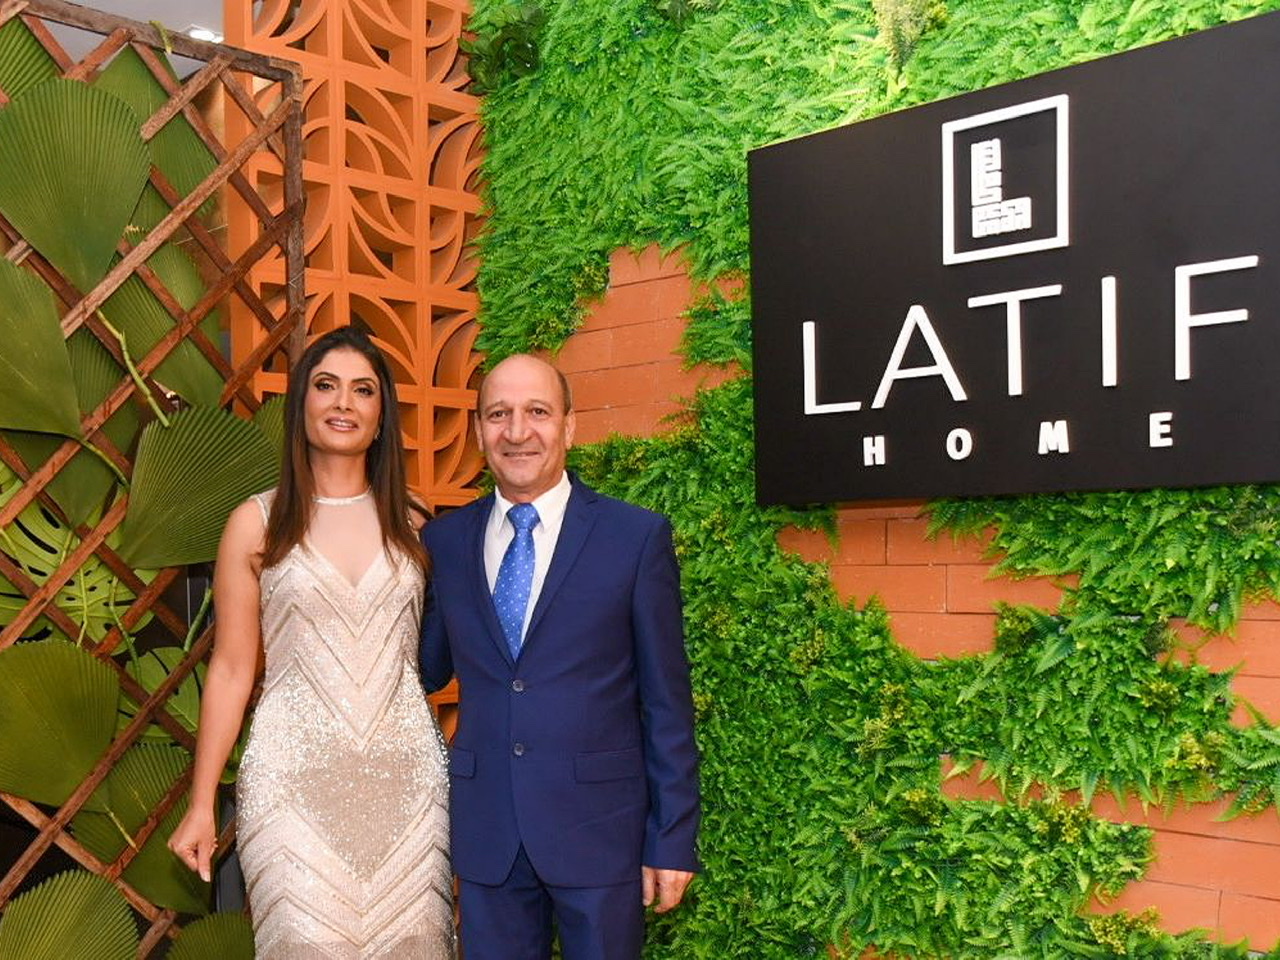 Giro de fotos: Lauro de Freitas ganha loja de 2.500 m² focada em arquitetura de alto padrão 